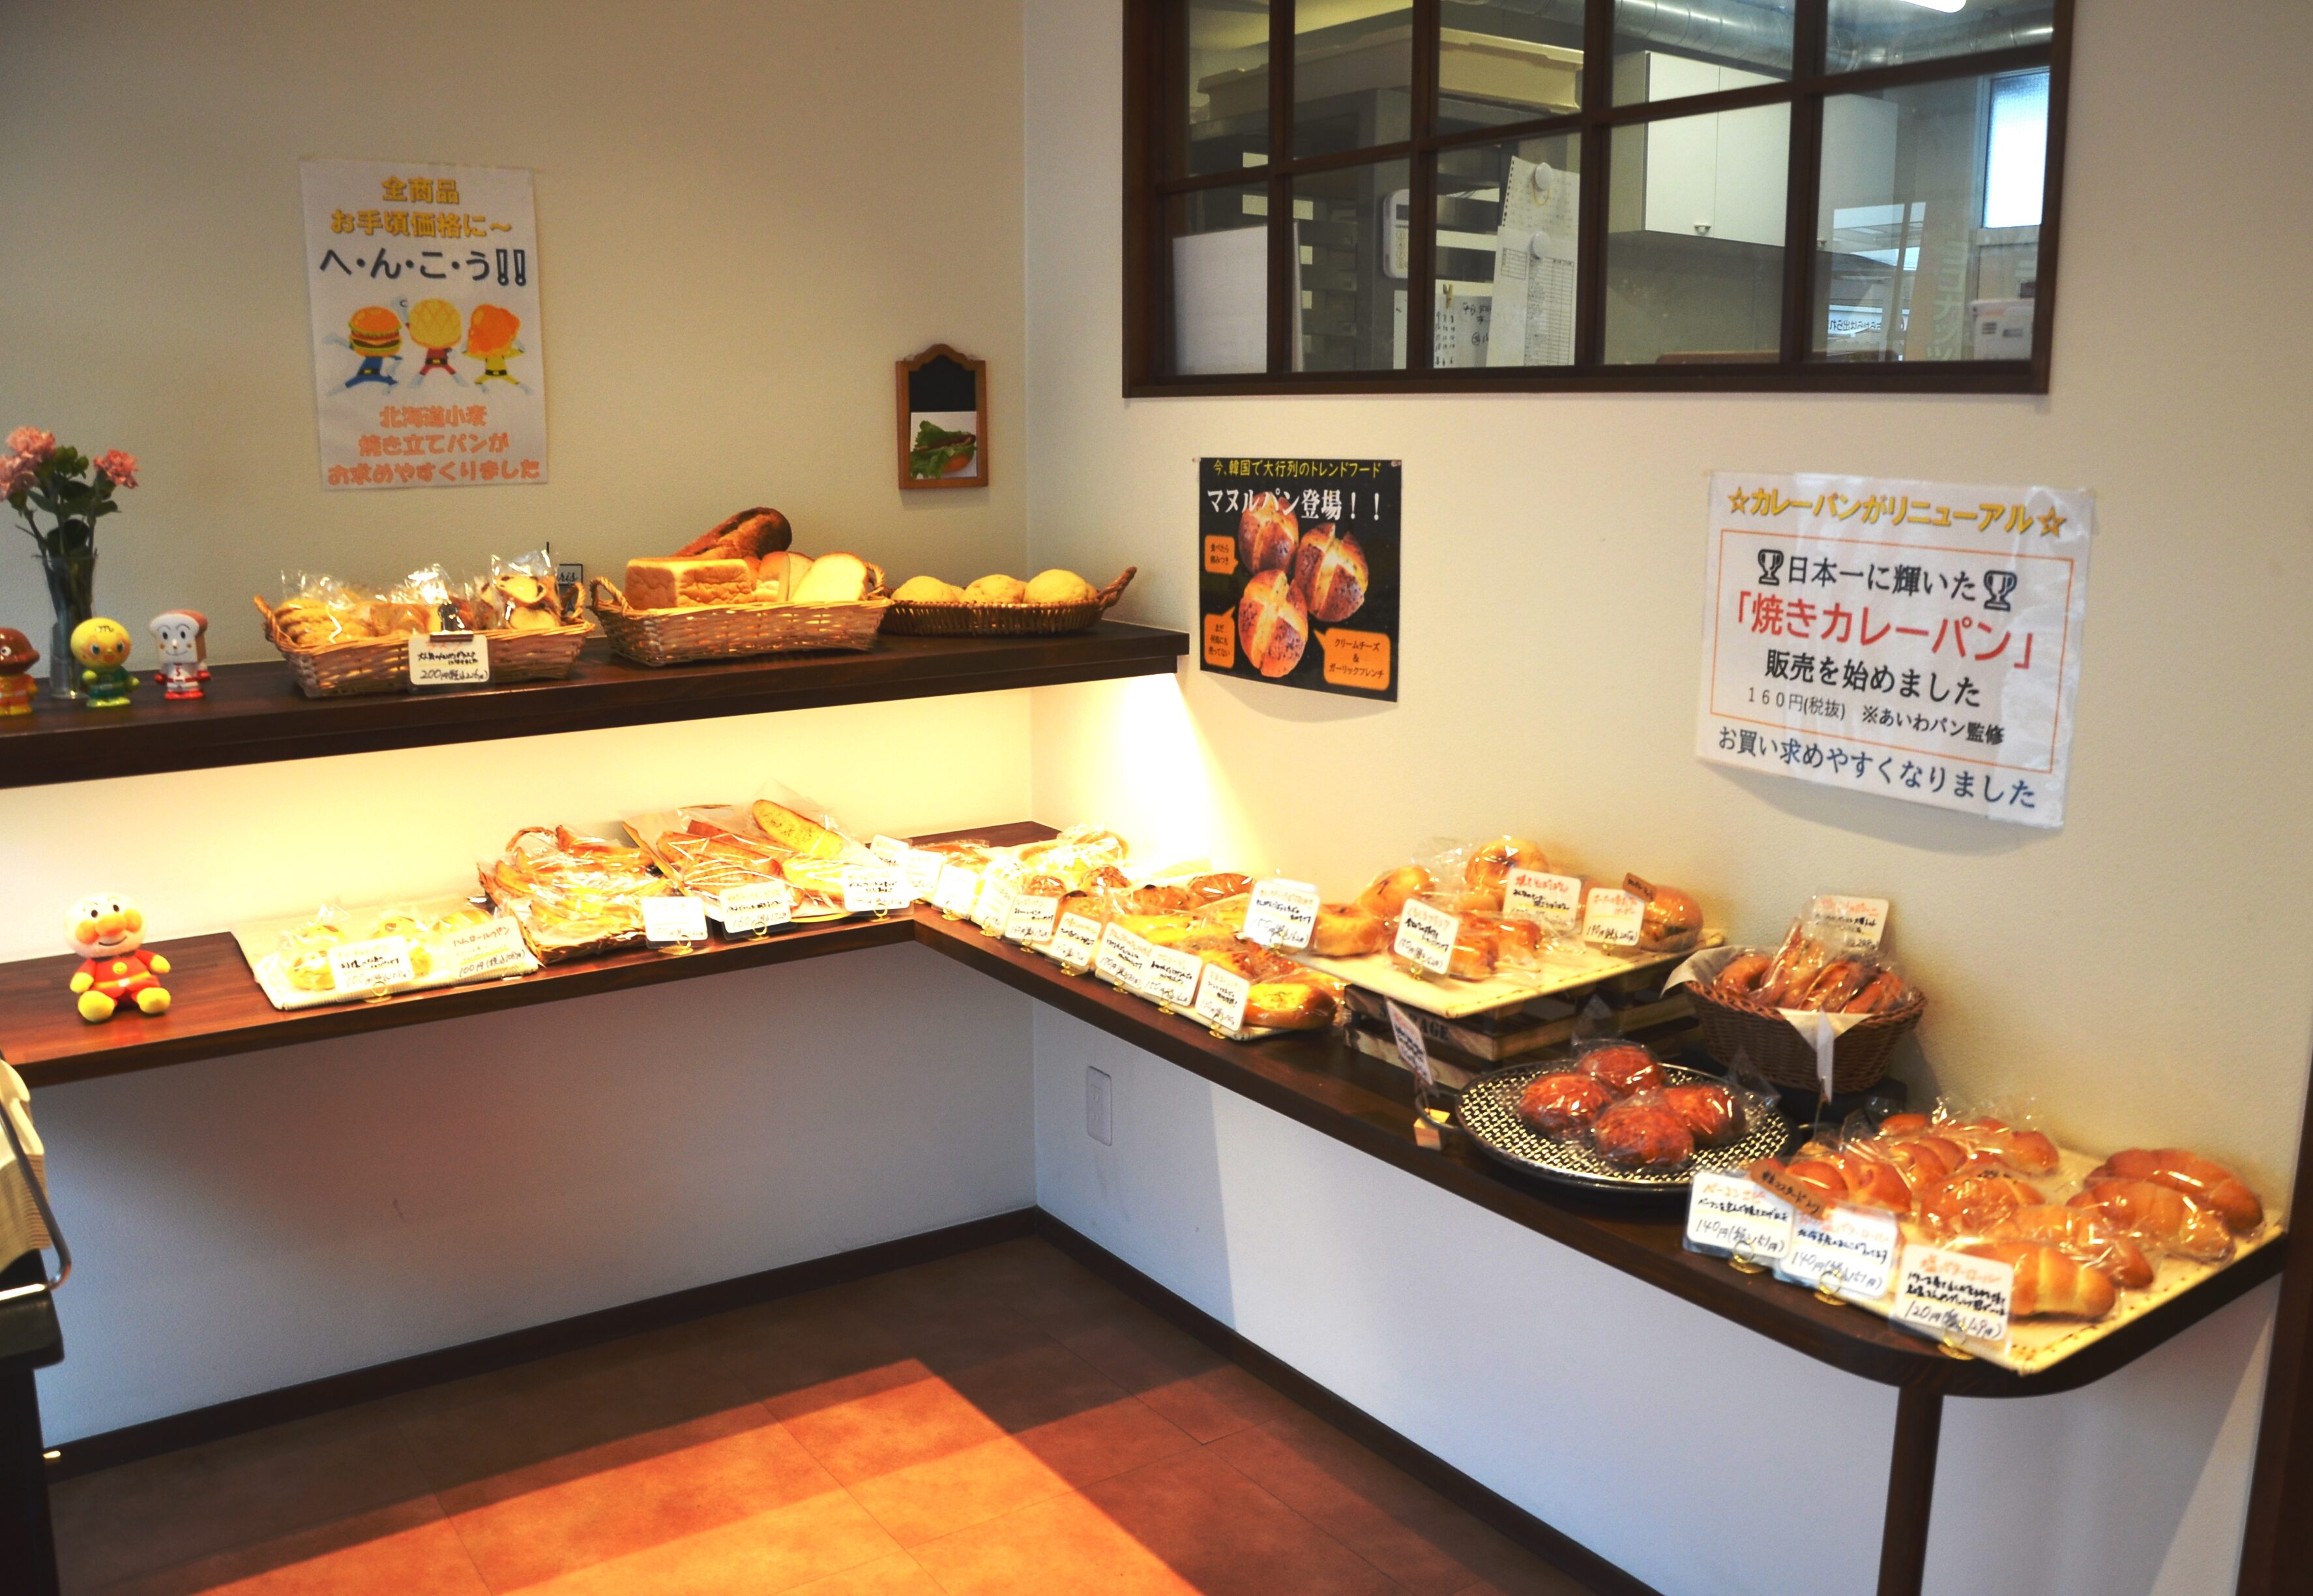 横浜市栄区で金賞の カレーパン を継承する人気店 はなパン には メロンパン 生食パンなど自信作が多数あった 神奈川 東京多摩のご近所情報 レアリア